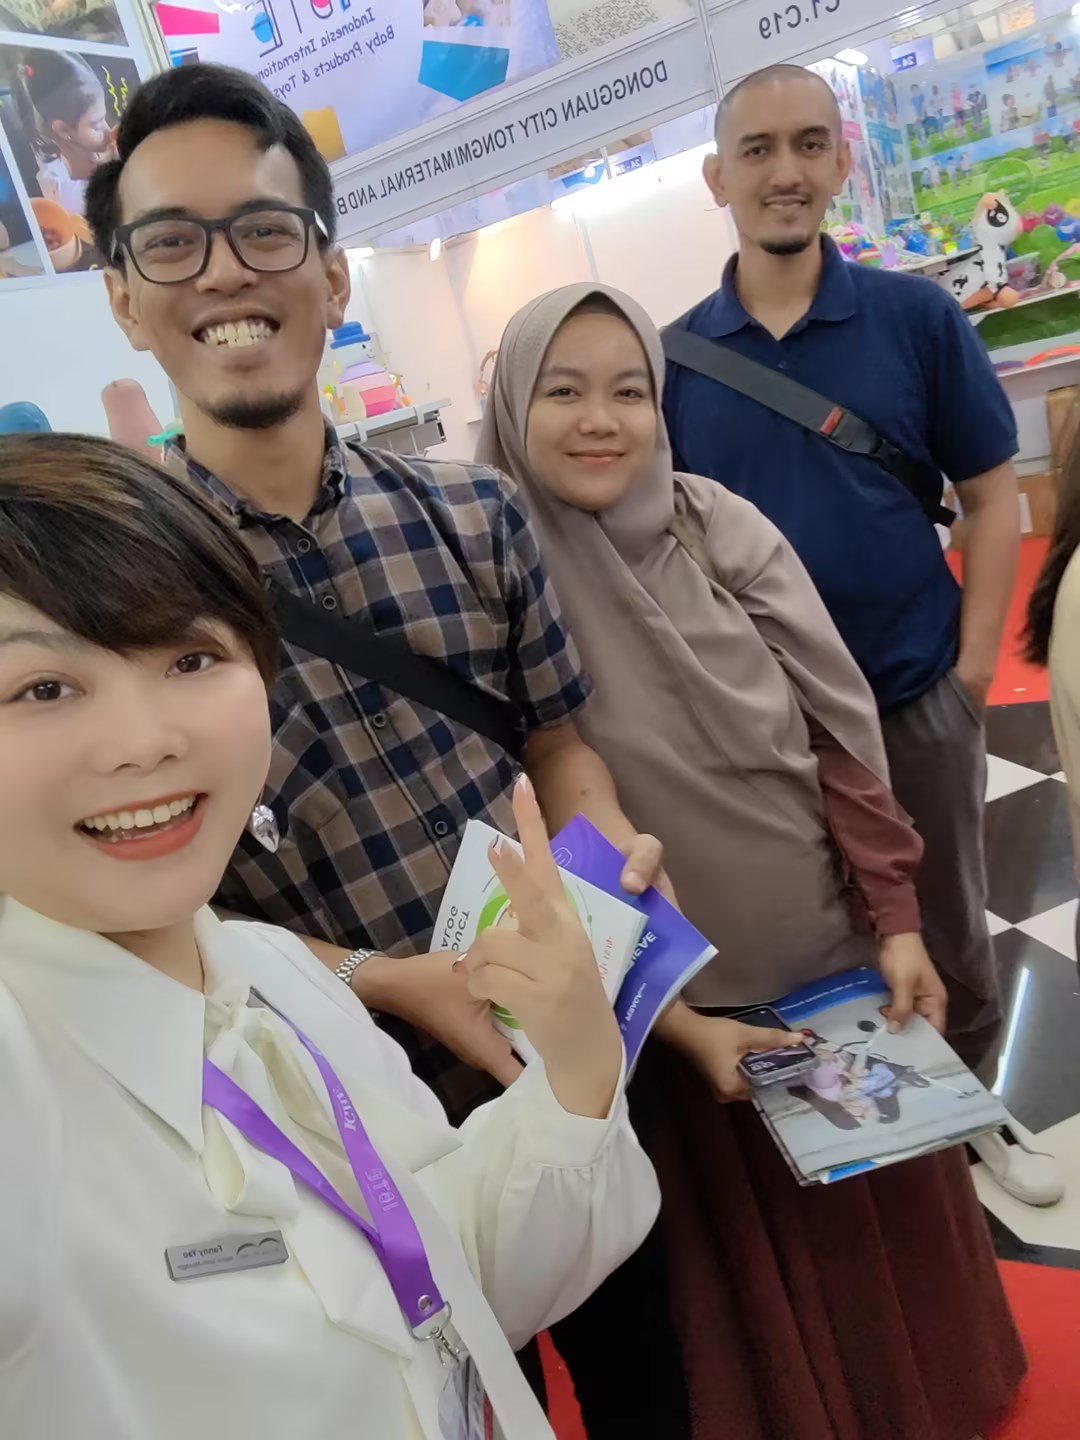 Indonesia Exhibition